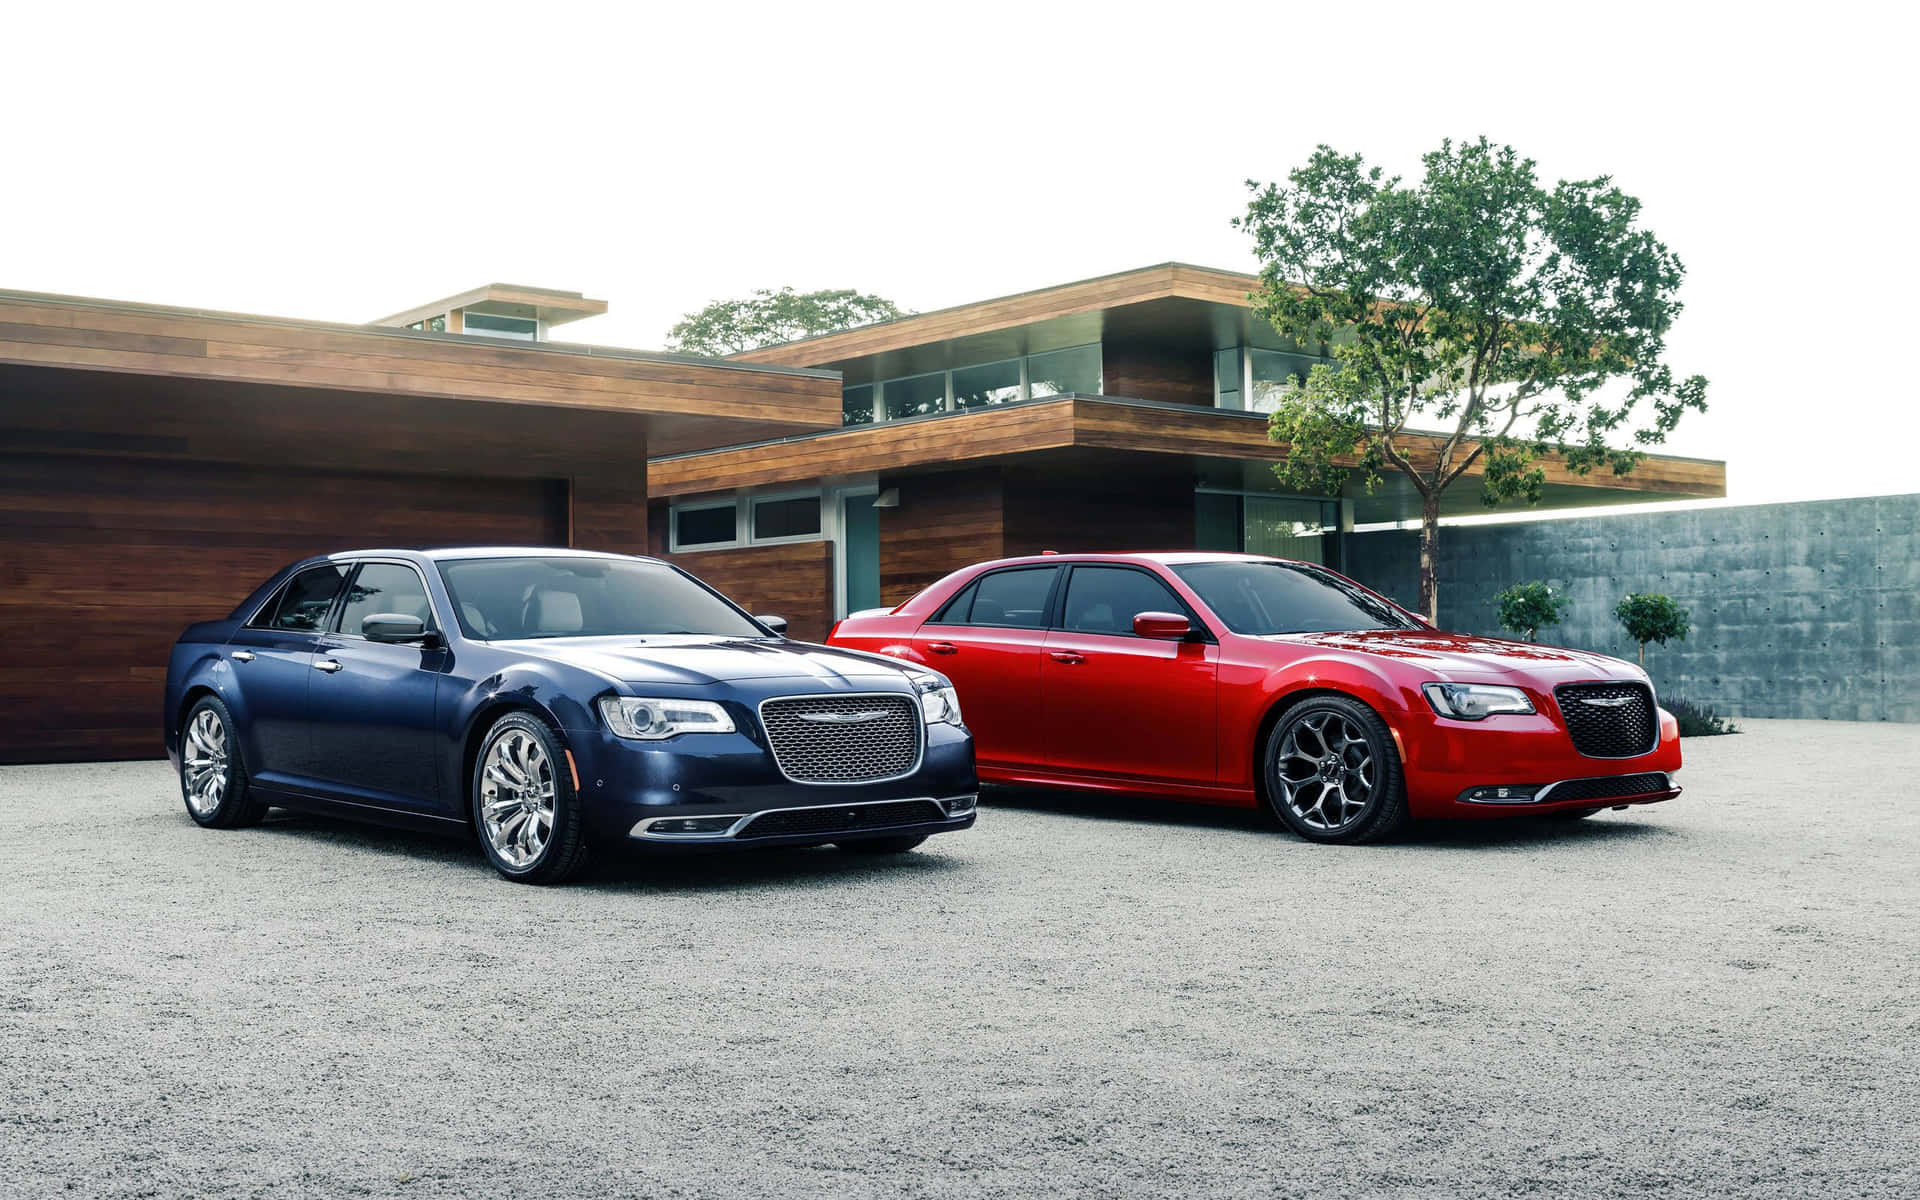 Chrysler's Family of Models